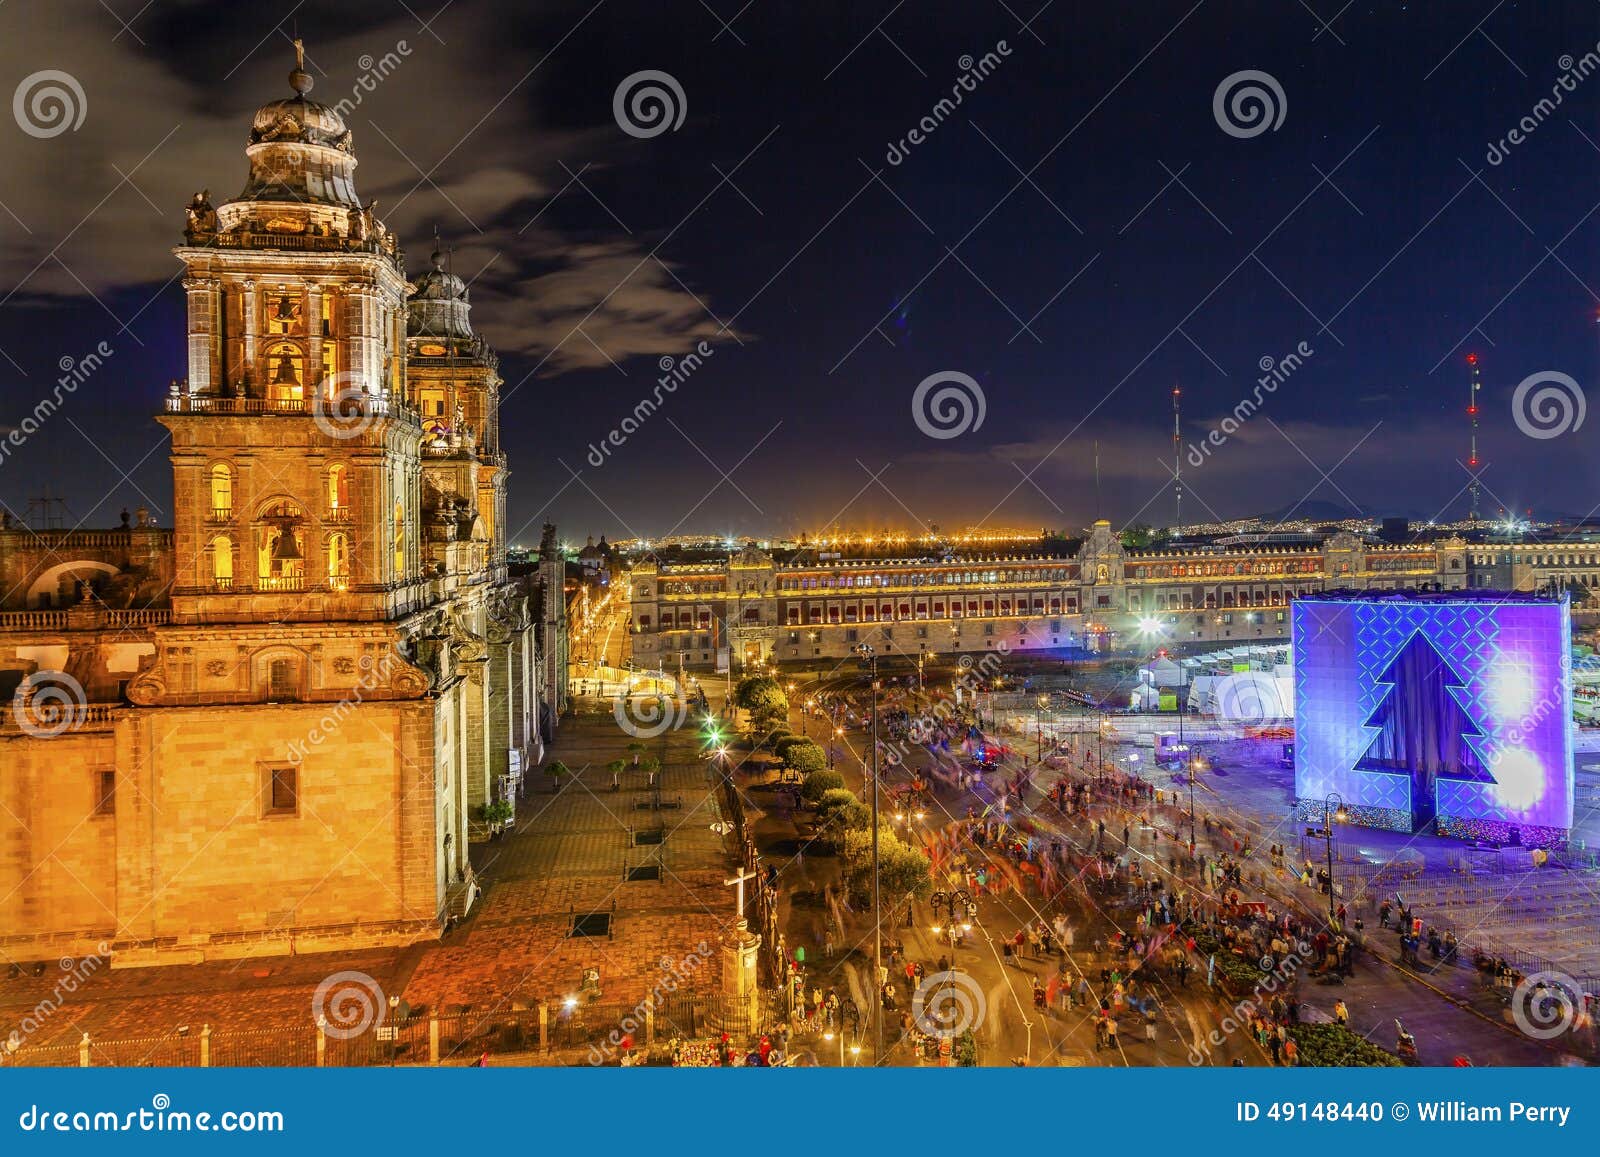 metropolitan cathedral zocalo mexico city christmas night